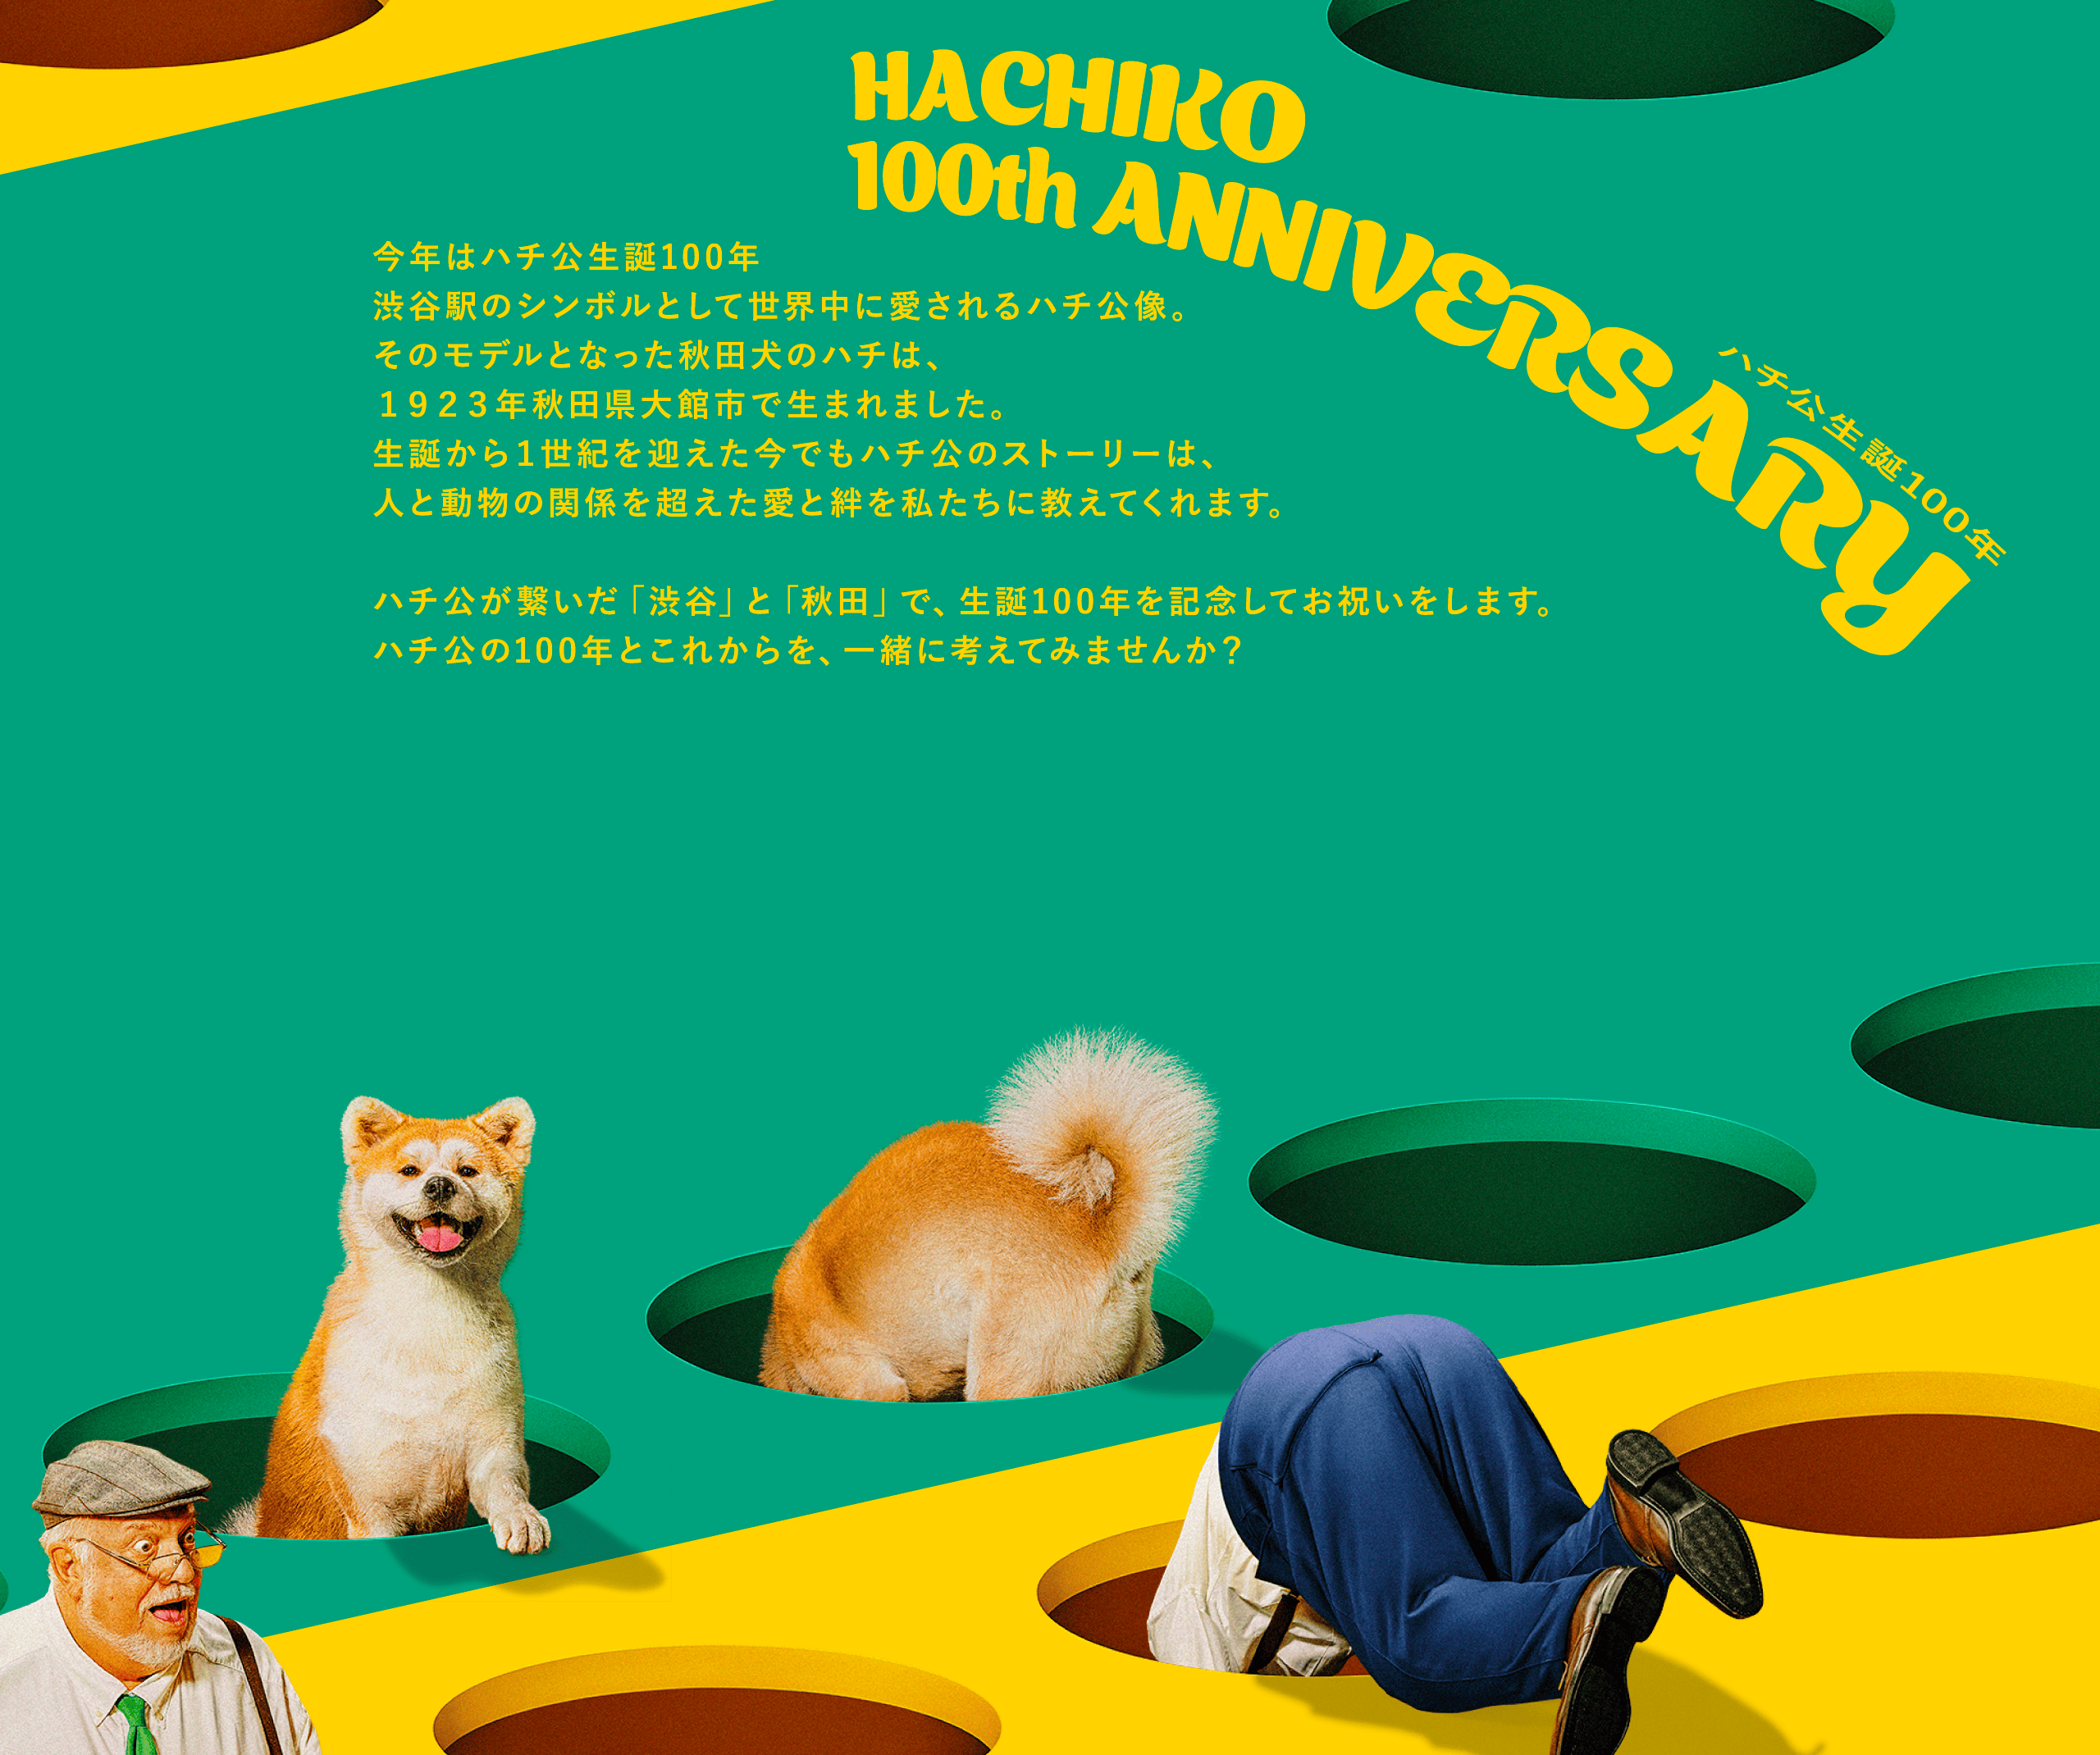 ハチ公生誕100周年 HACHIKO 100th ANNIVERSARY 今年はハチ公生誕100年渋谷駅のシンボルとして世界中に愛されるハチ公像。そのモデルとなった秋田犬のハチは、１９２３年秋田県大館市で生まれました。生誕から１世紀を迎えた今でもハチ公のストーリーは、人と動物の関係を超えた愛と絆を私たちに教えてくれます。ハチ公が繋いだ「渋谷」と「秋田」で、生誕100年を記念してお祝いをします。ハチ公の100年とこれからを、一緒に考えてみませんか？